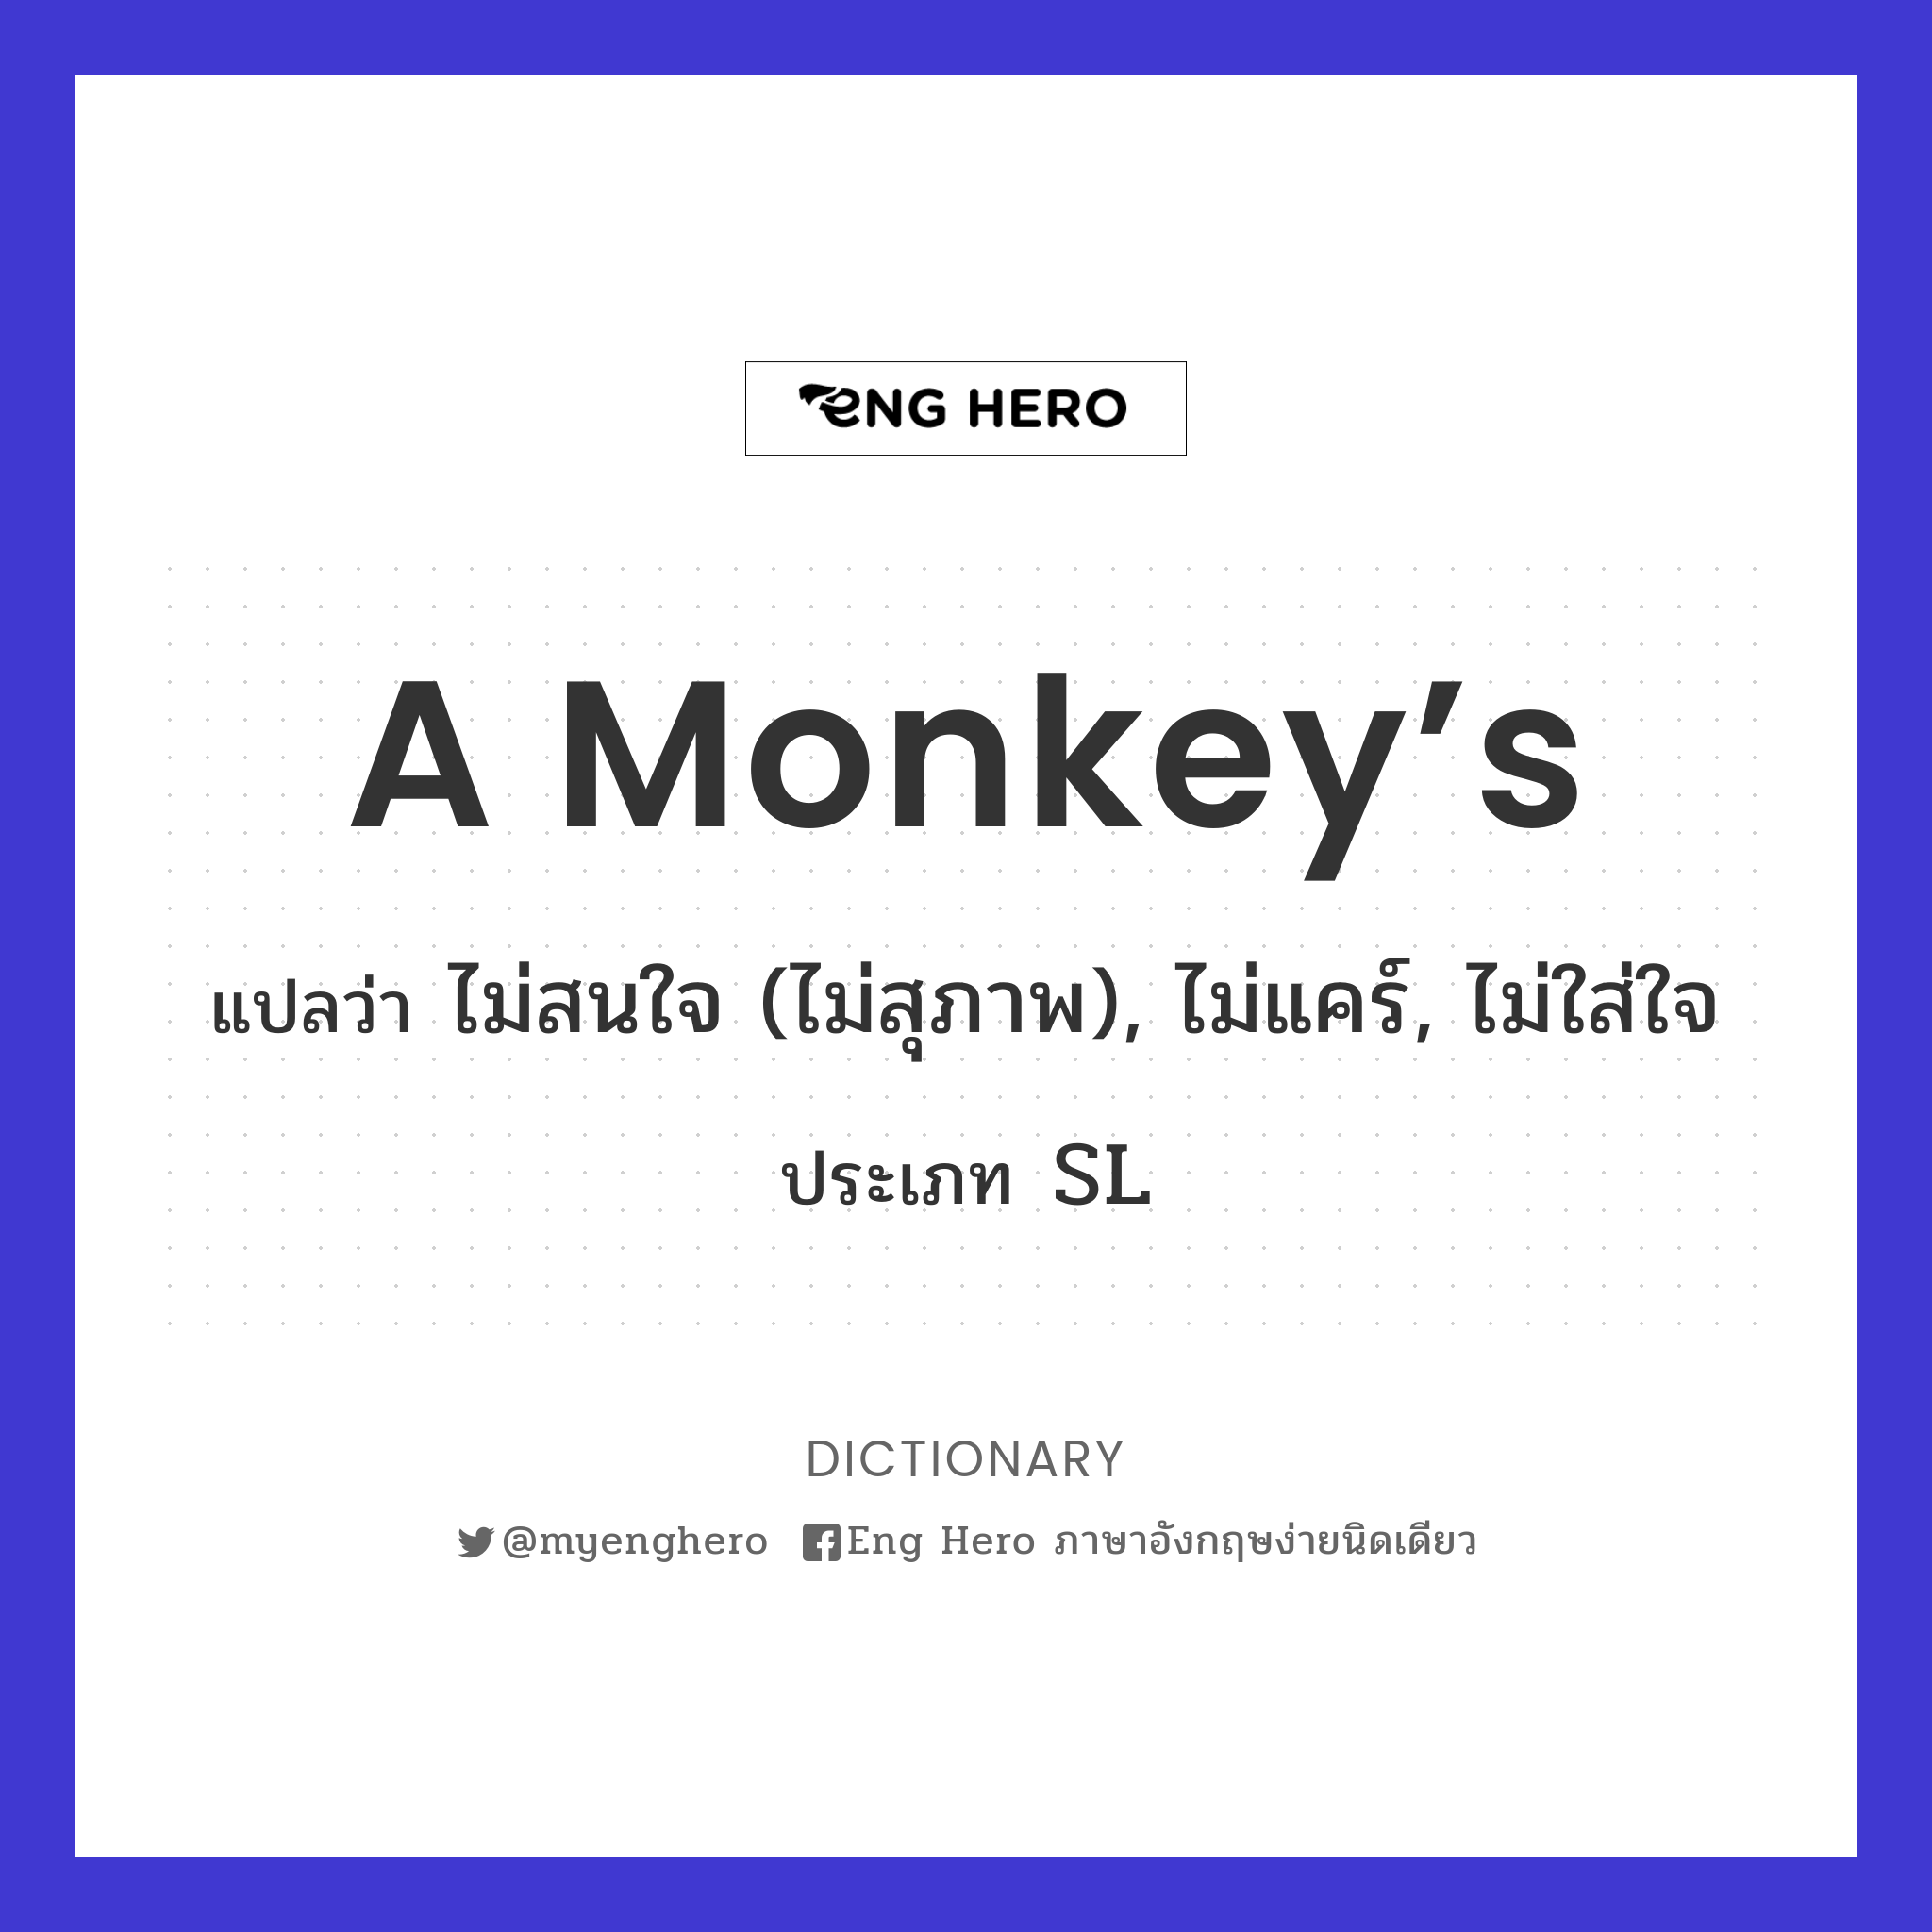 A monkey’s